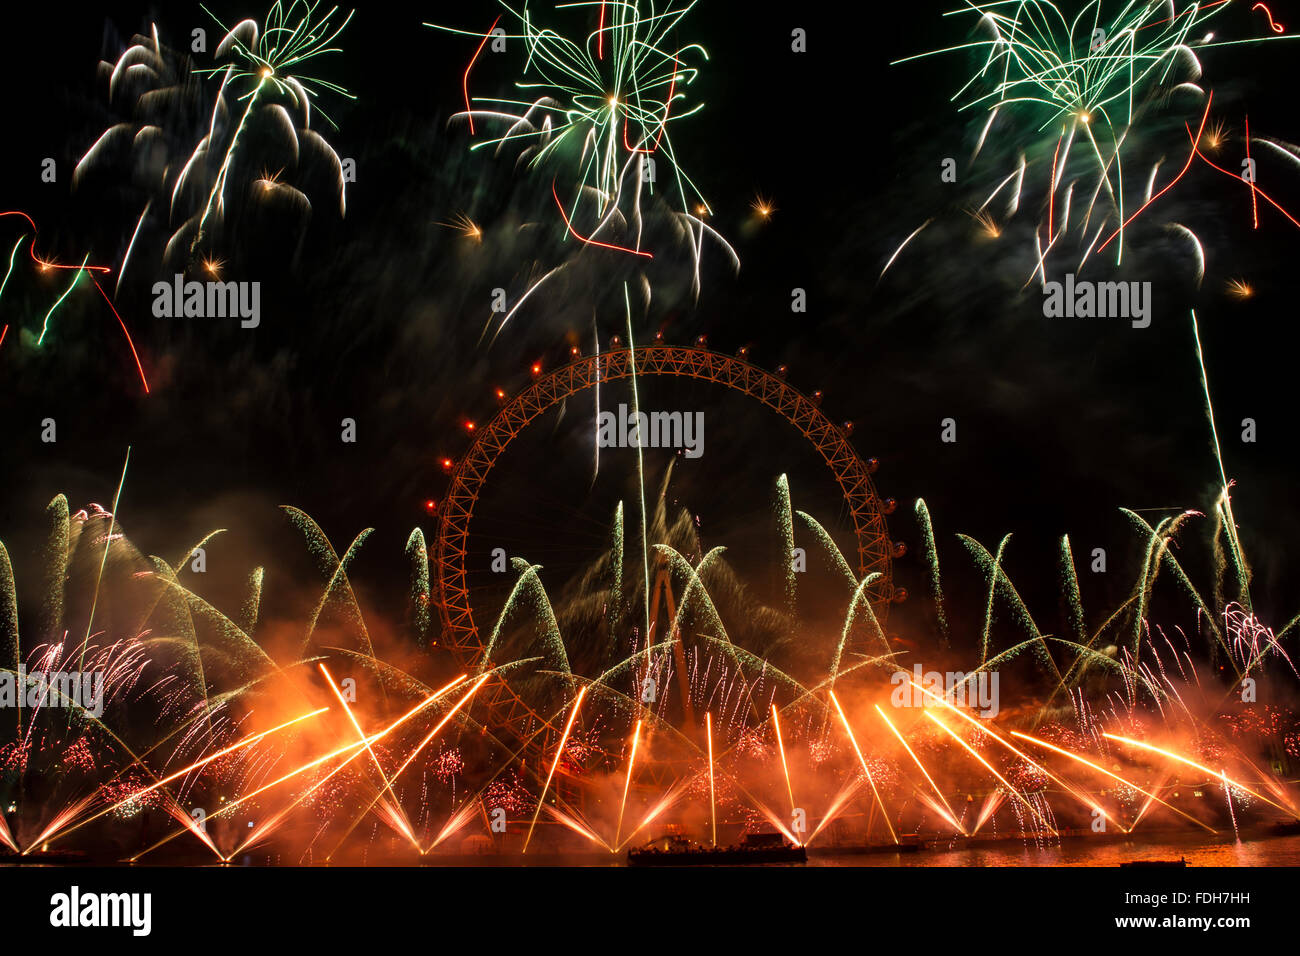 La nouvelle année de Londres 2016 Feu d'artifice au London Eye. Prises à partir de la statue de la RAF sur la rive nord de la Tamise. Comprend : Voir Où : London, Royaume-Uni Quand : 31 déc 2015 Banque D'Images